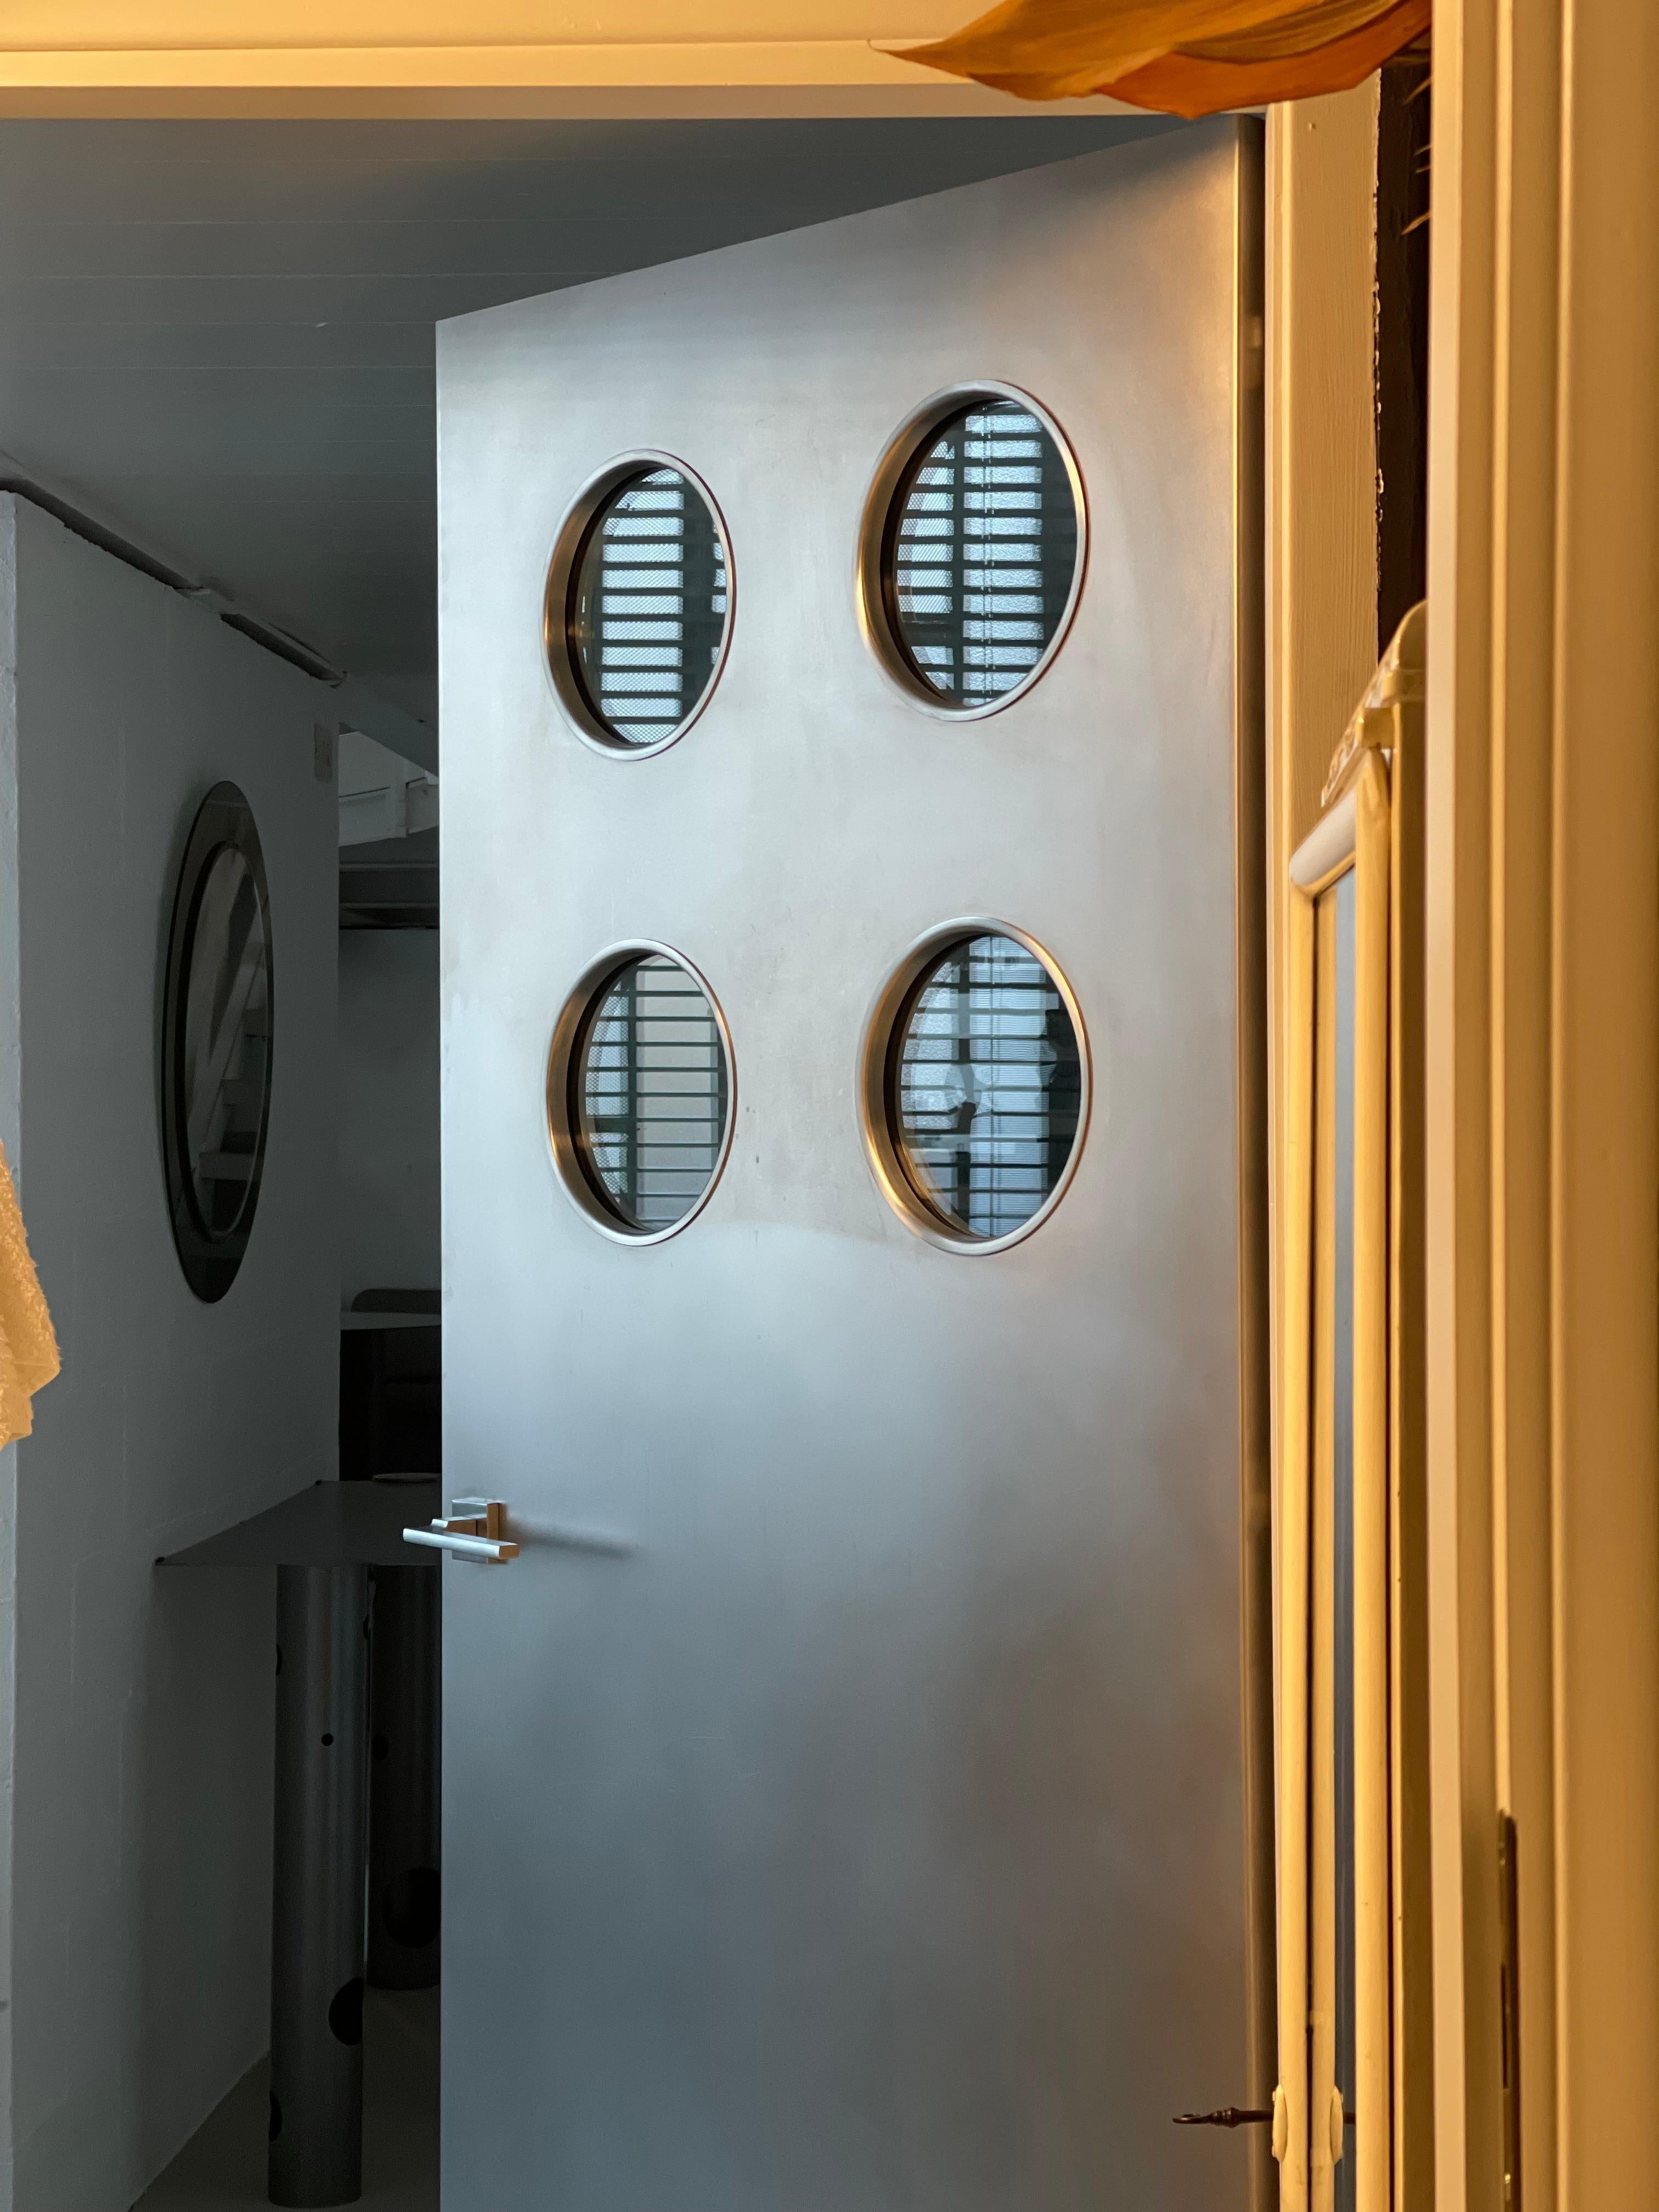 Zeitgenössische, maßgefertigte Metalltür aus Edelstahl mit runden Bullaugen, entworfen von Spinzi und hergestellt in Italien.

Inspiriert von den Werken Jean Prouvés wurde diese Tür um eine bestehende Holztür herum gebaut, wobei runde